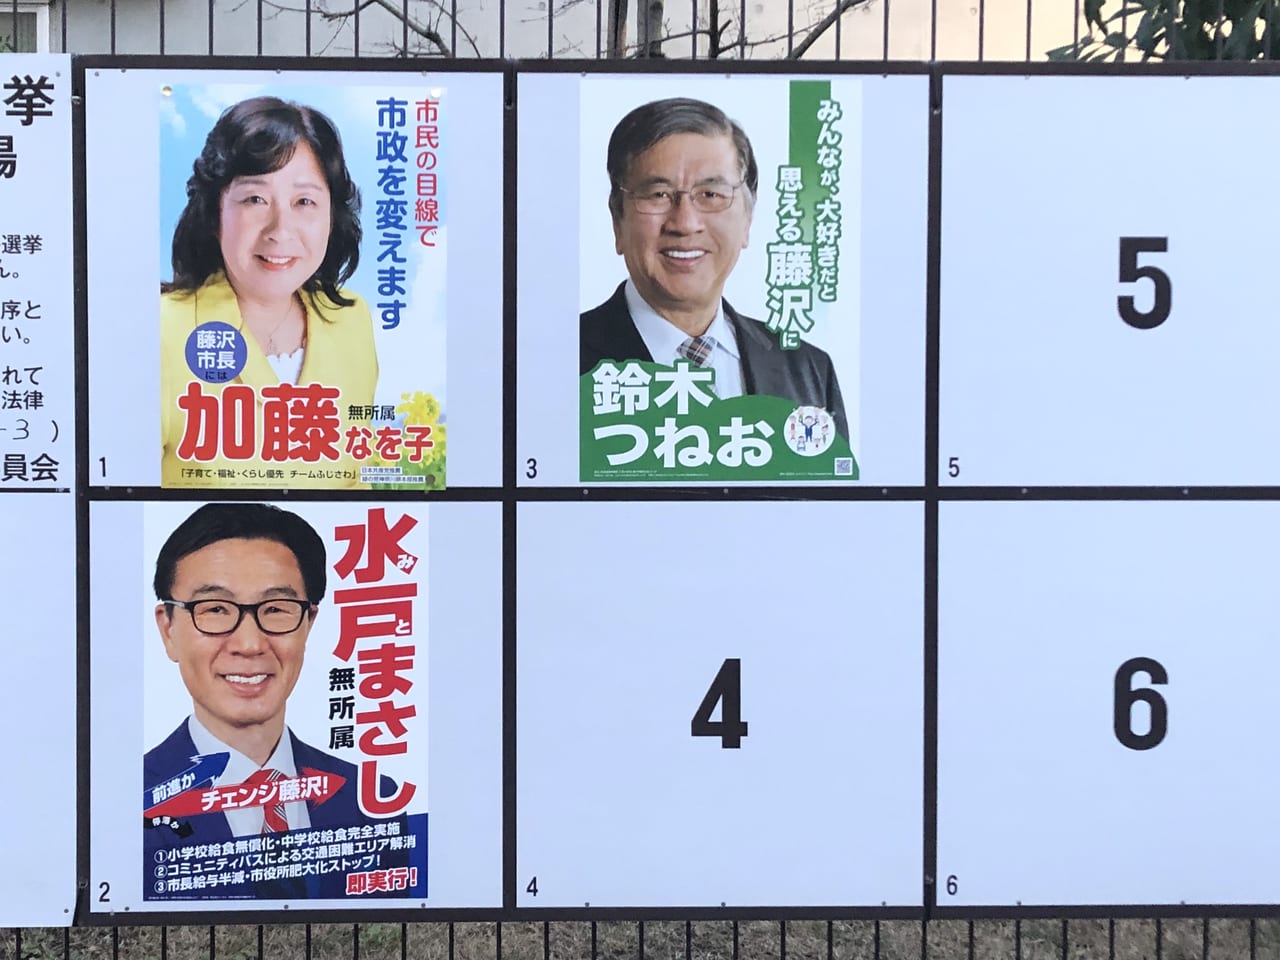 藤沢市 第回藤沢市長選挙の投票日 開票は21 15 投票率は 開票状況は 投開票速報はこちらから 確定しました 号外net 藤沢市